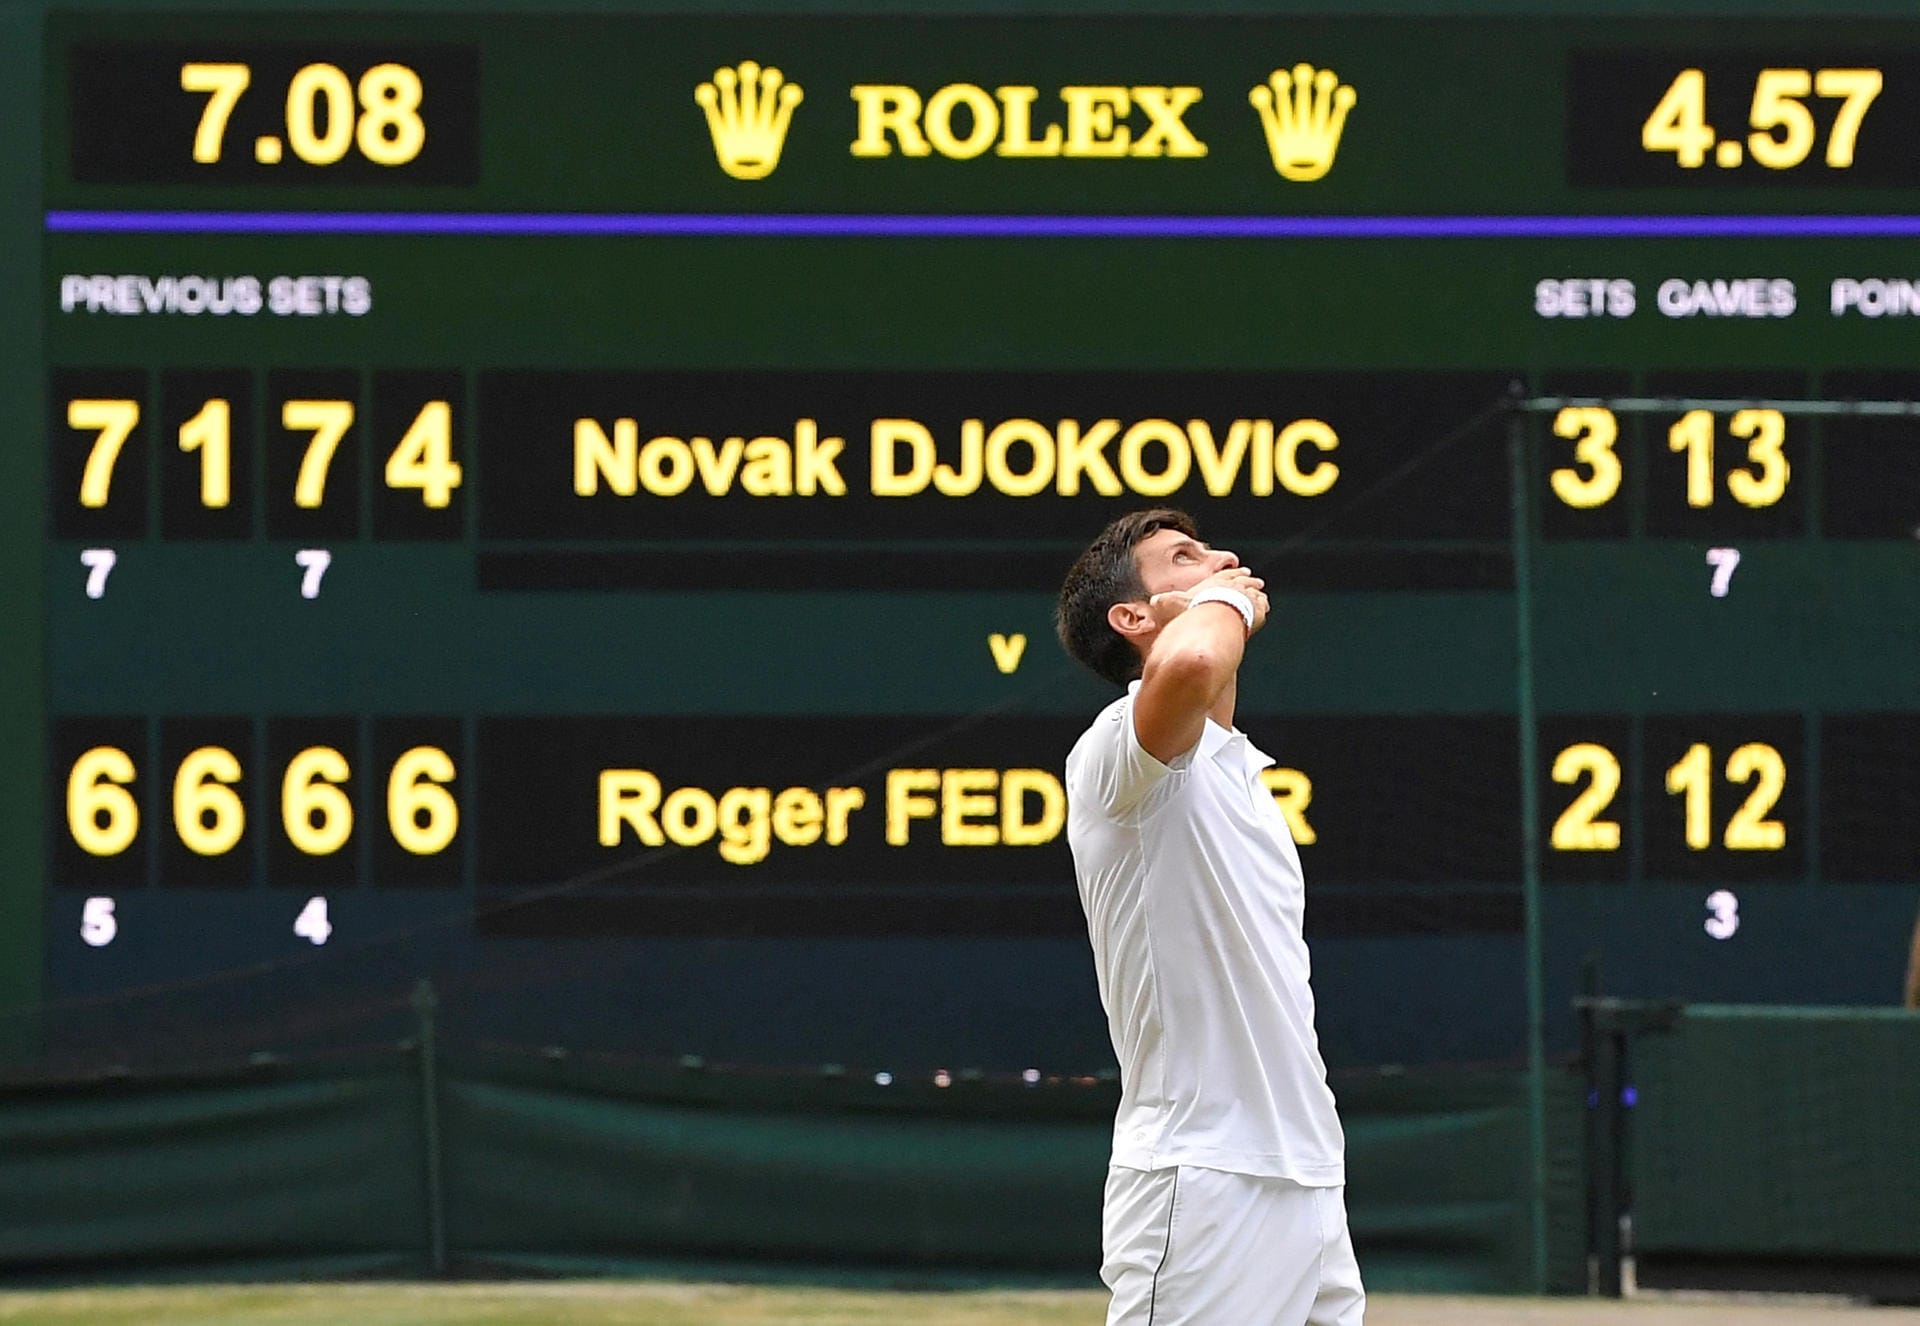 Am Ende setzte sich Djokovic durch! 4:57 Stunden – das längste Finale der Wimbledon-Historie. Schon jetzt ein Match für die Geschichtsbücher.